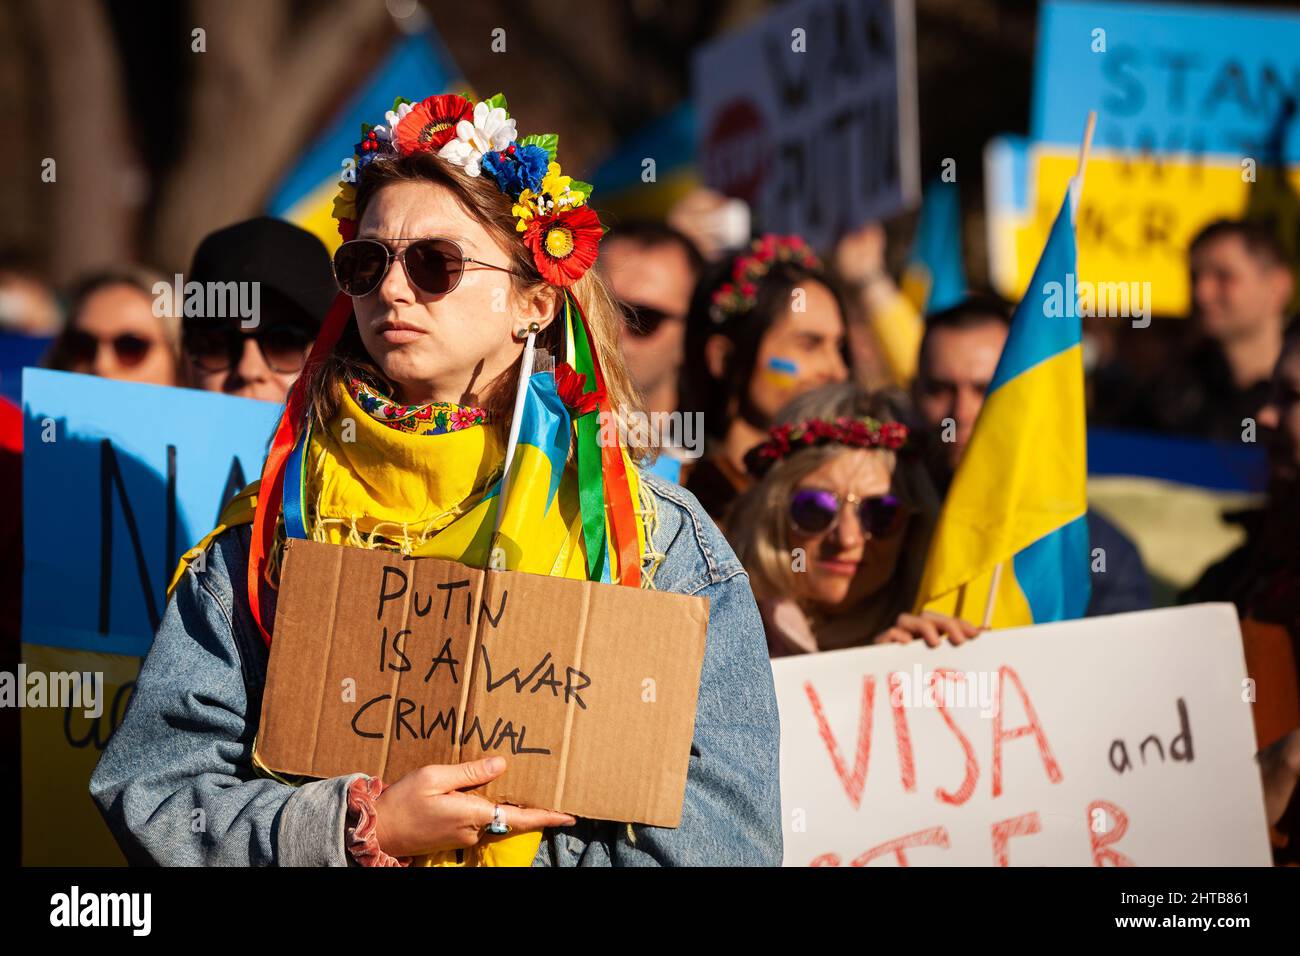 Washington, DC, États-Unis, 27 février 2021. En photo : un manifestant porte des fleurs et des rubans dans ses cheveux lors d'un rassemblement pour l'Ukraine à la Maison Blanche. Des milliers de personnes de partout aux États-Unis se sont rassemblées pour remercier les États-Unis et d'autres pays pour leur aide, et pour exiger une zone d'exclusion aérienne et d'autres aides pour l'Ukraine. L'événement a été parrainé par United Help Ukraine et des militants ukrainiens américains, des organisations d'assistance et de défense des droits basées aux États-Unis. Crédit : Allison Bailey / Alamy Live News Banque D'Images